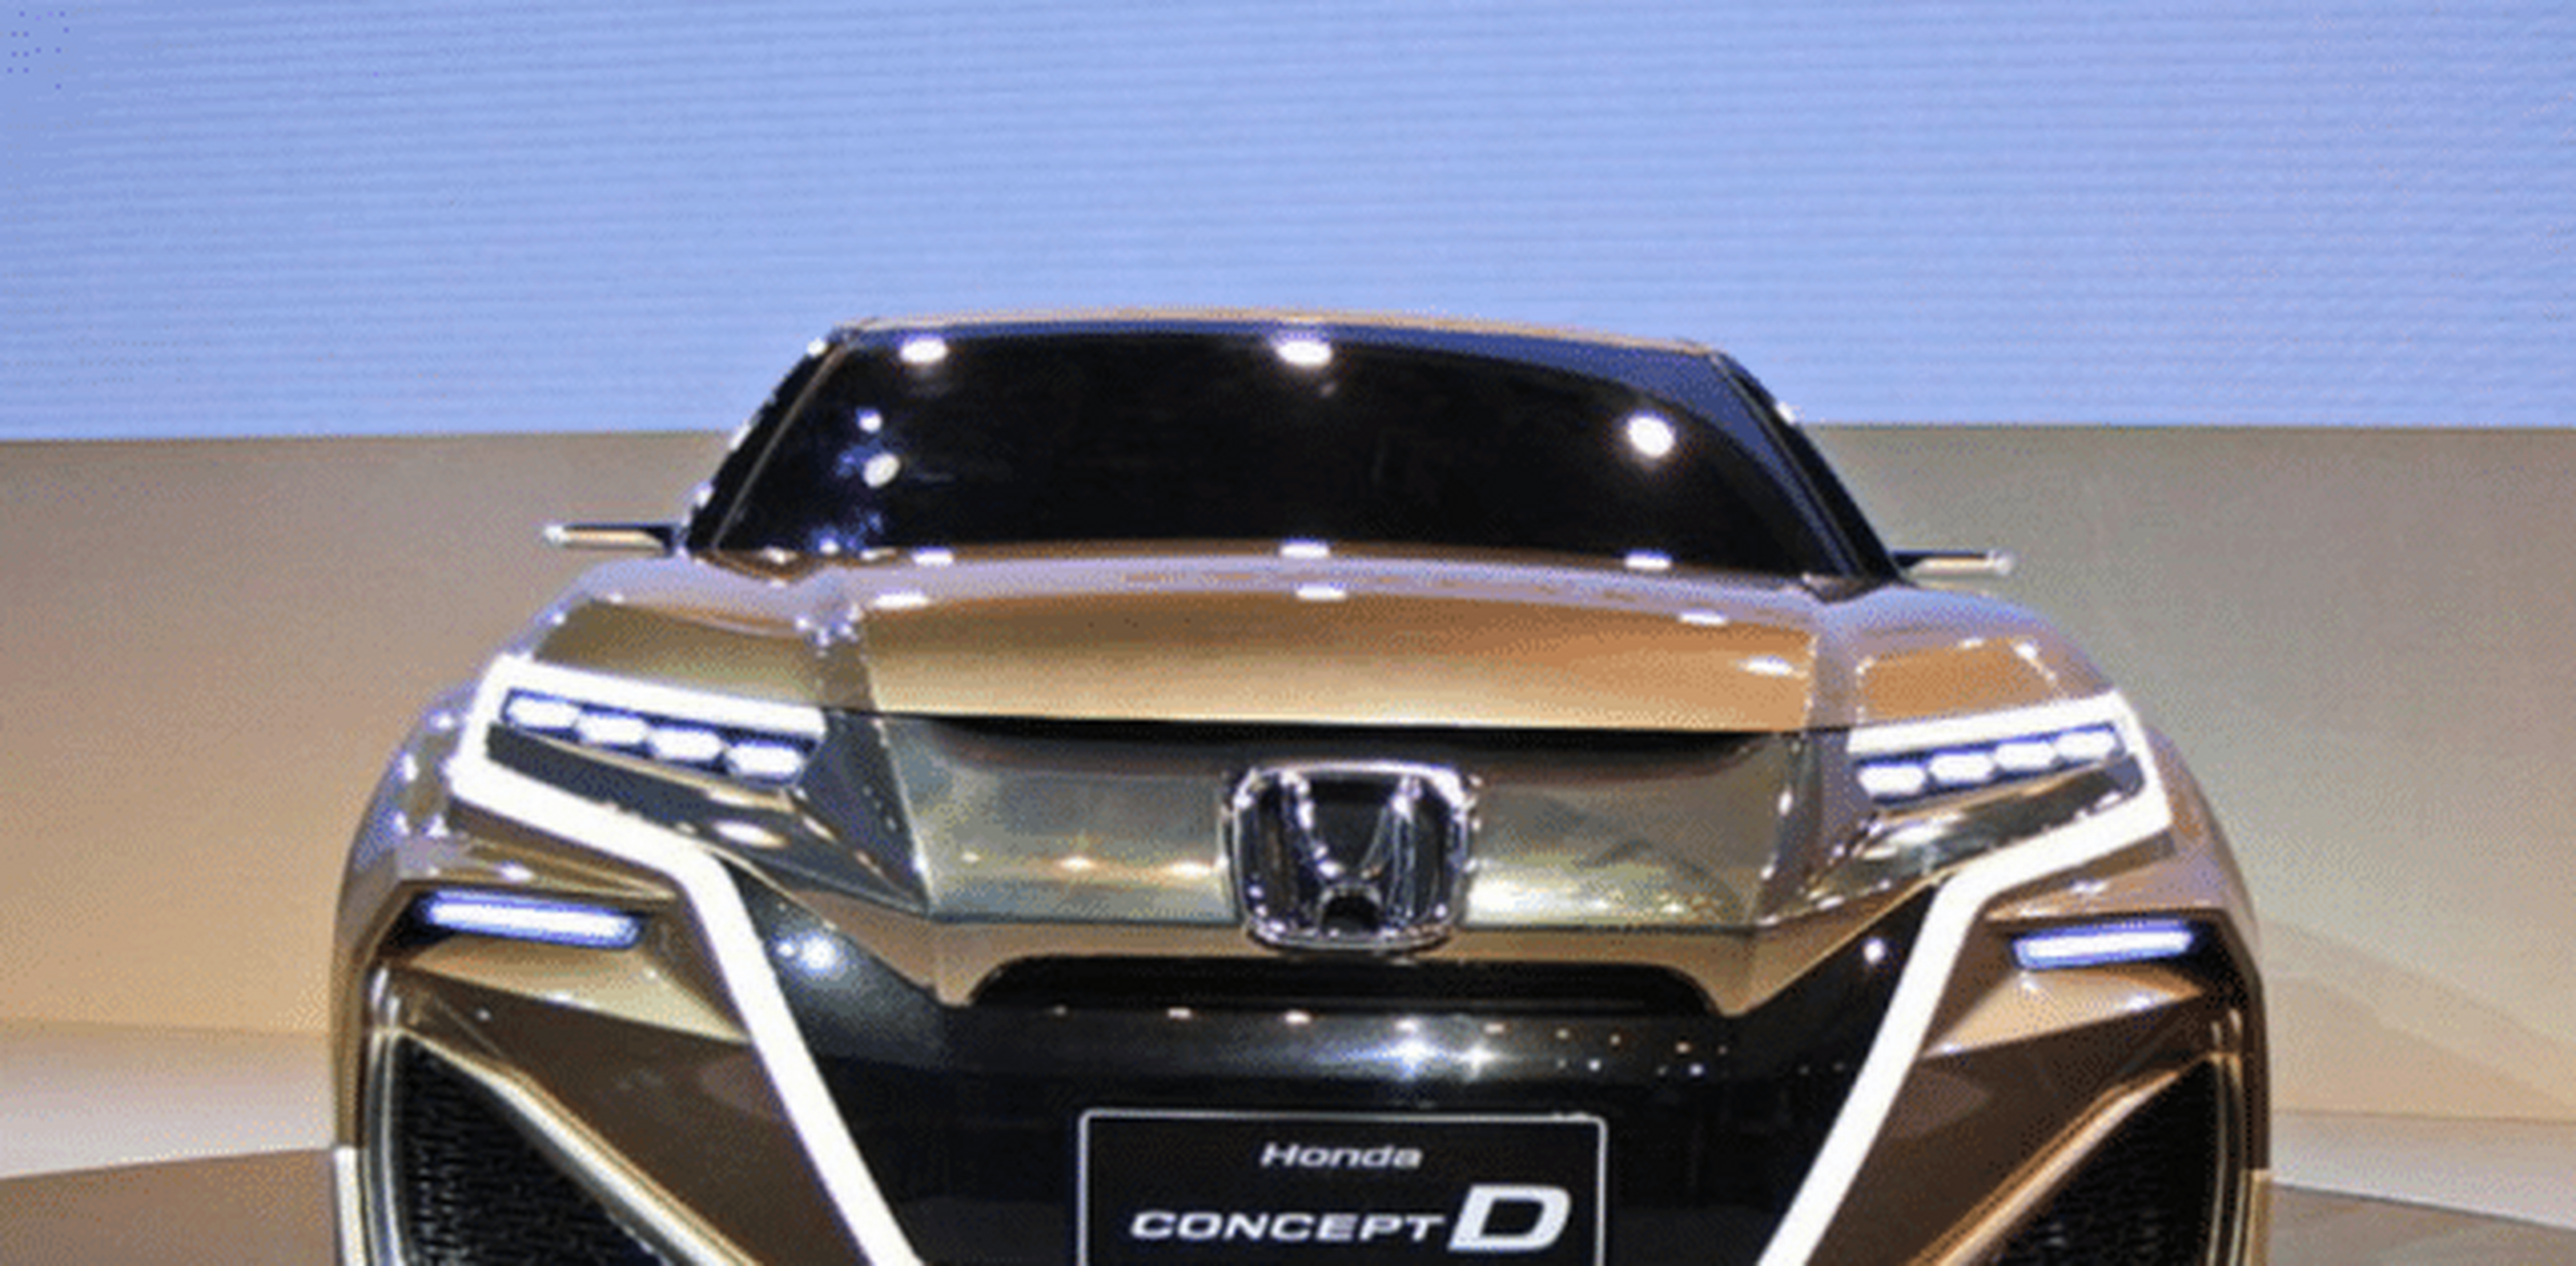 一款来自本田的车型,它就是——本田concept d